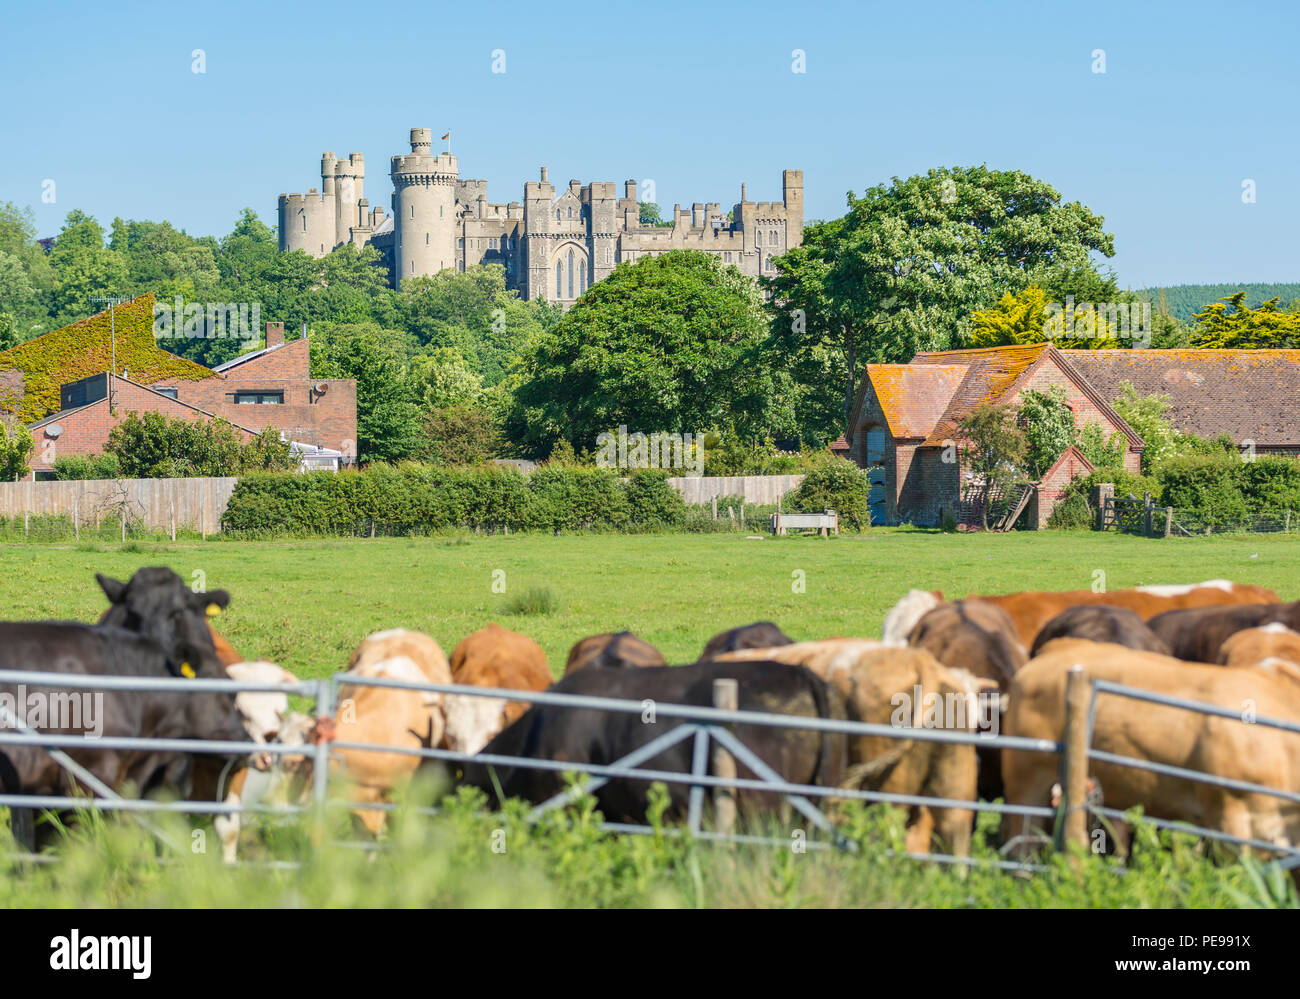 Arundel Castle in Großbritannien countrside, aus einem Kühe Feld in der Arun Tal in Arundel, West Sussex, England, UK. Britische schloss. Castle UK. Stockfoto